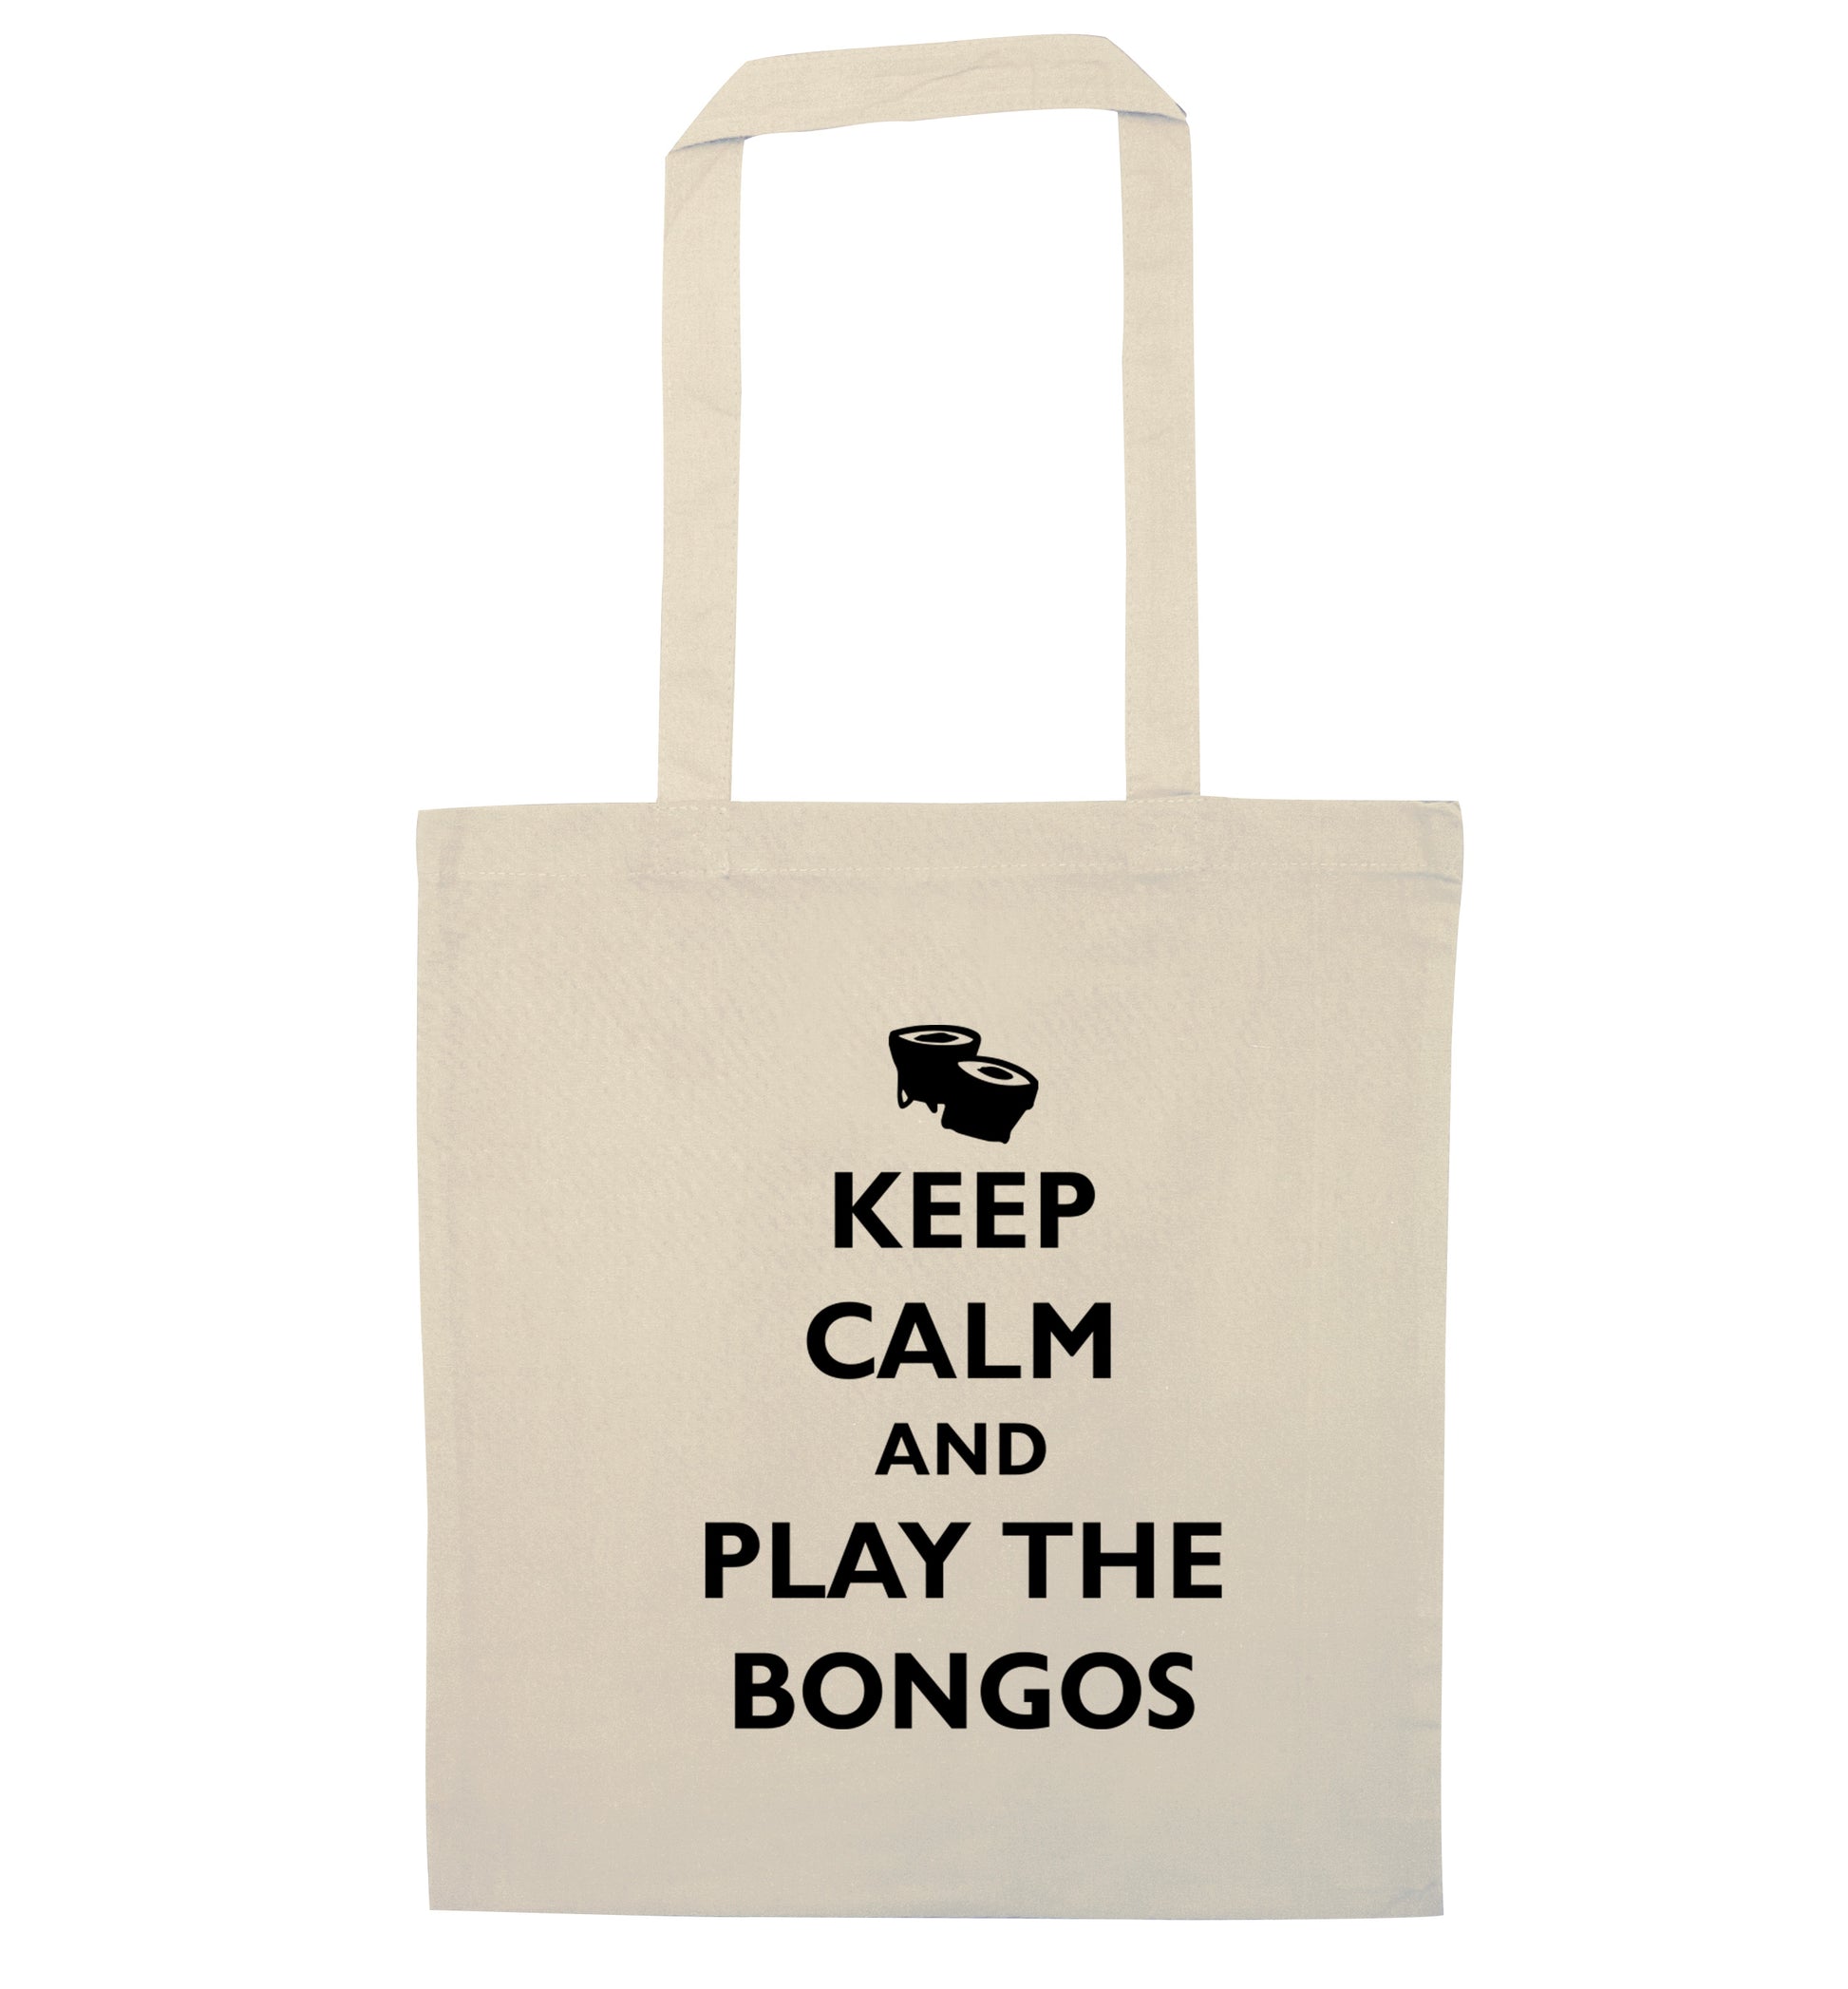 Keep calm and play the bongos natural tote bag